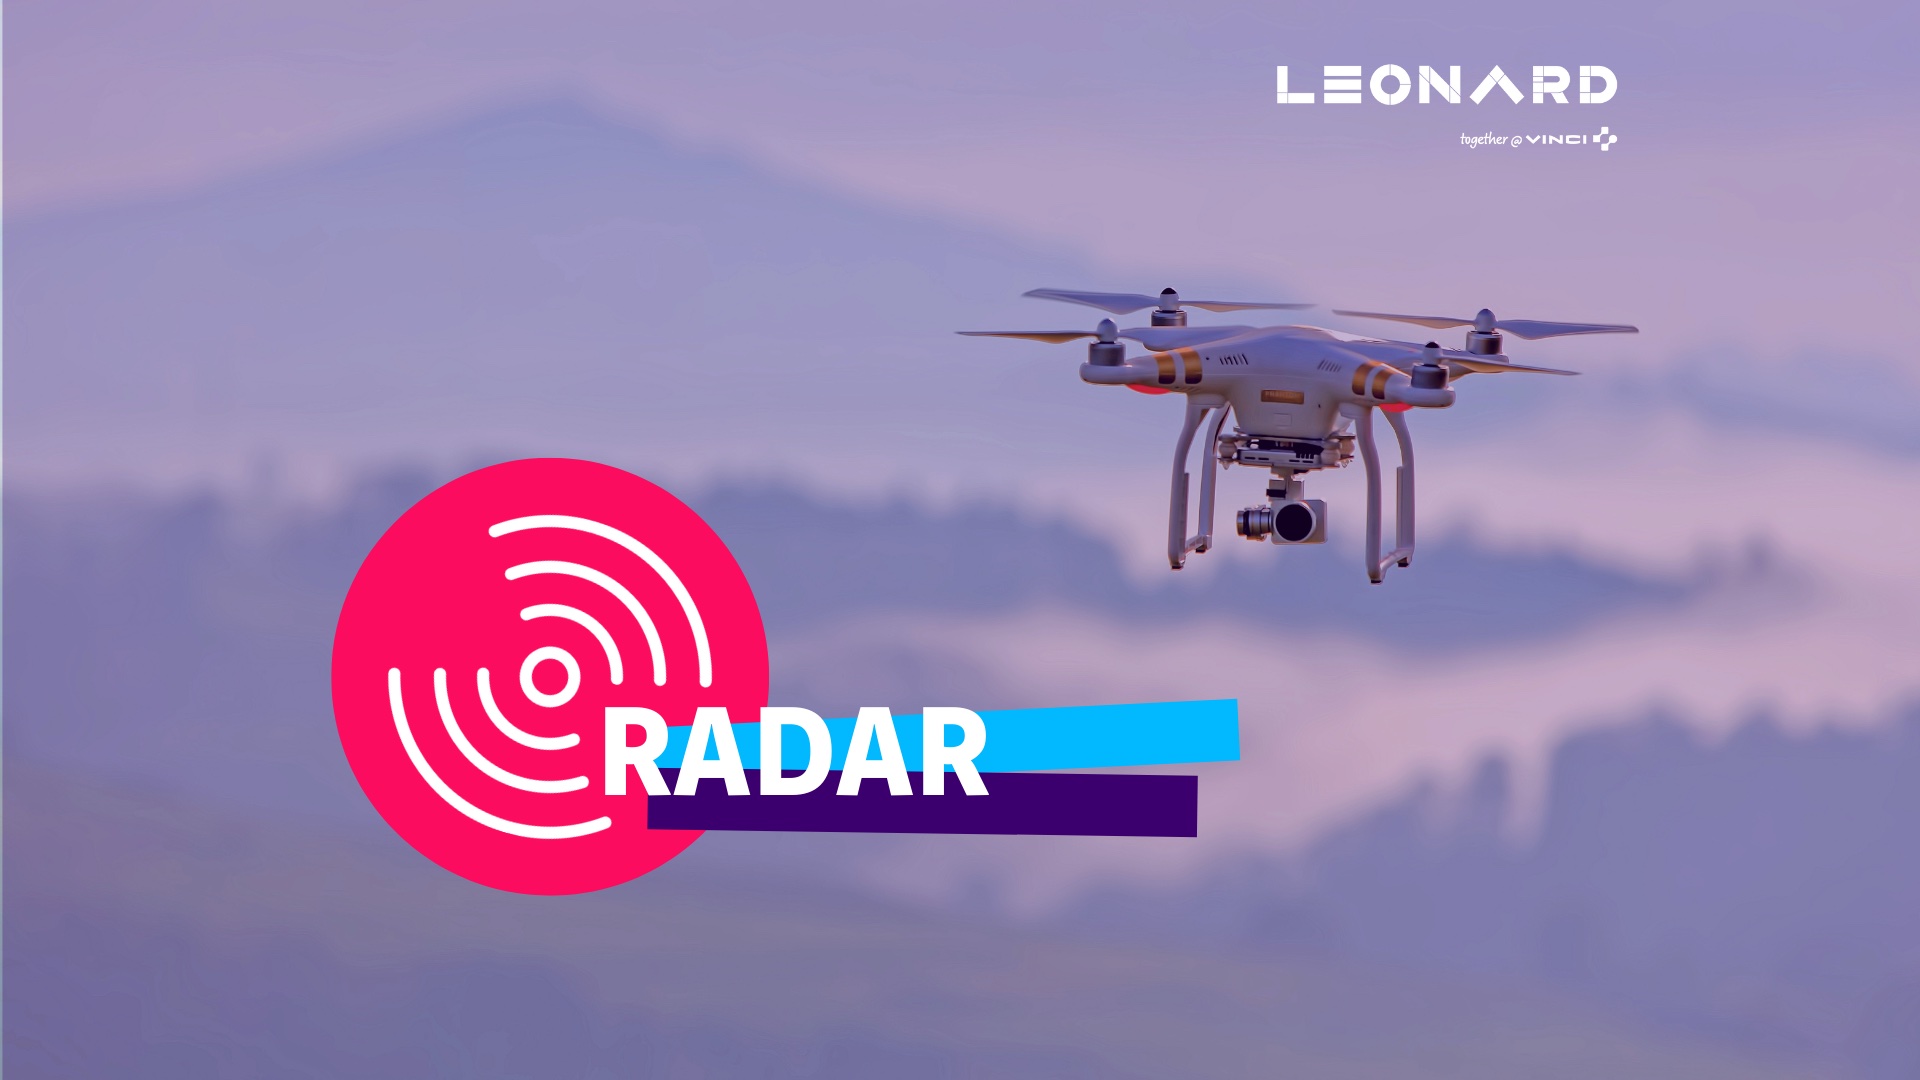 Radar – Notre sélection de business innovants #60